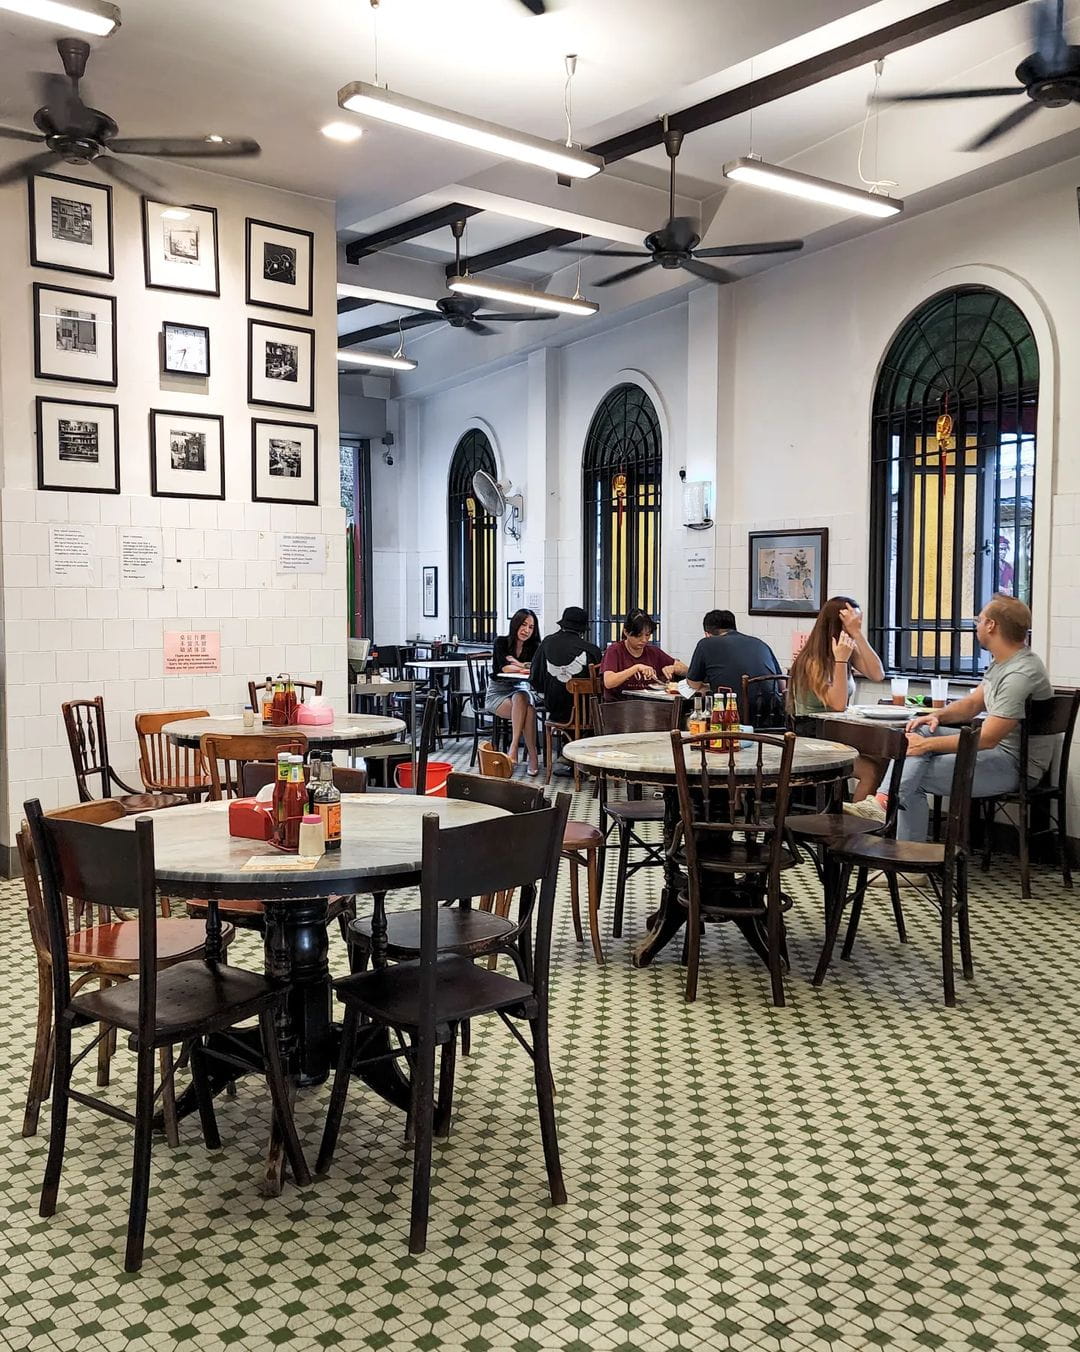 Modern kopitiams in Kuala Lumpur - Yut Kee dining